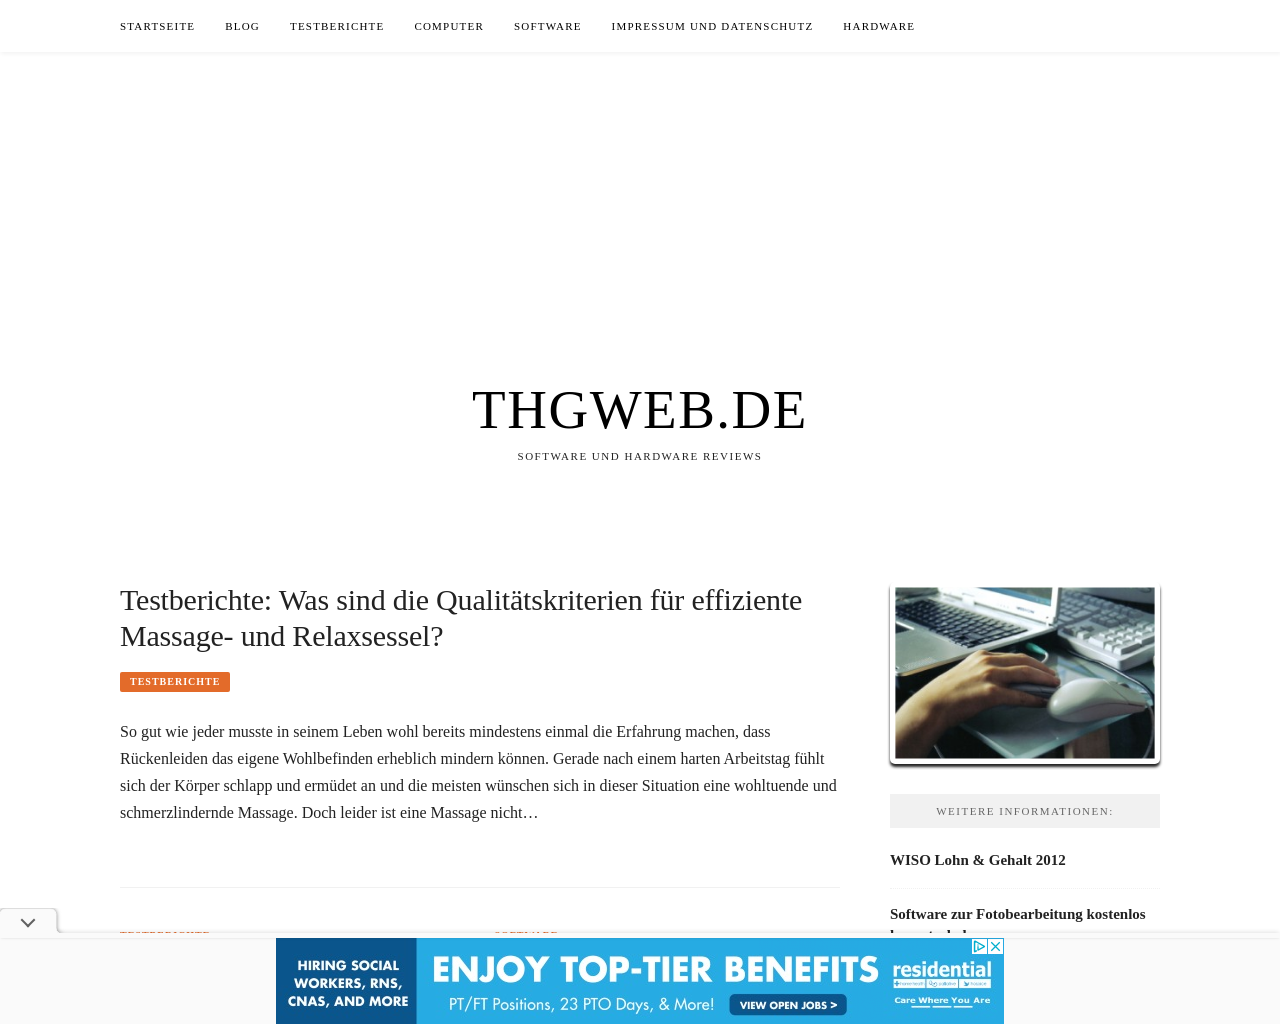 thgweb.de